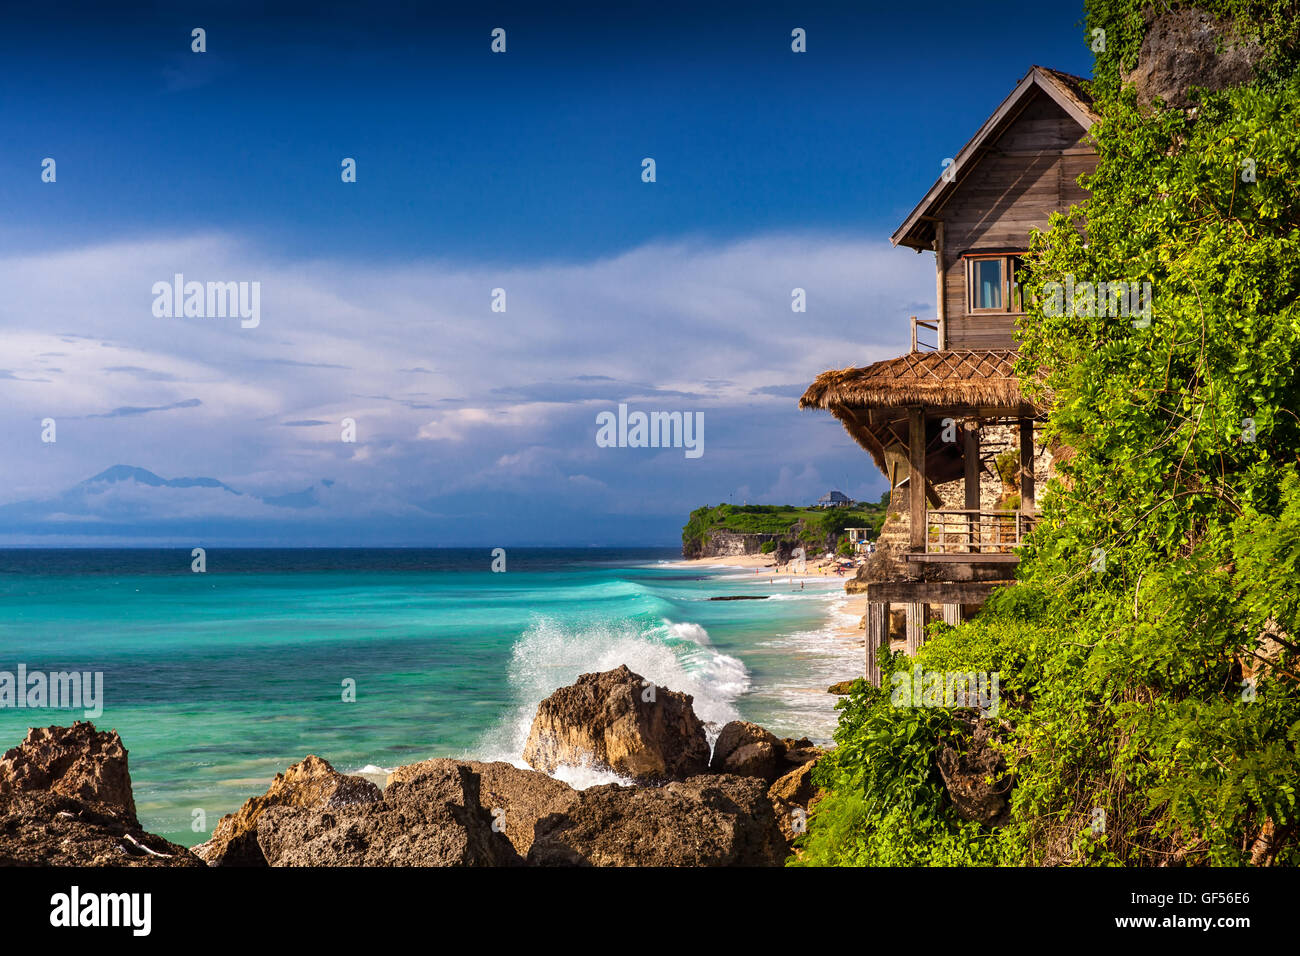 Tropical Beach Insel Bali mit Landschaft holz Hütte auf Hintergrund Natur Landschaft Stockfoto